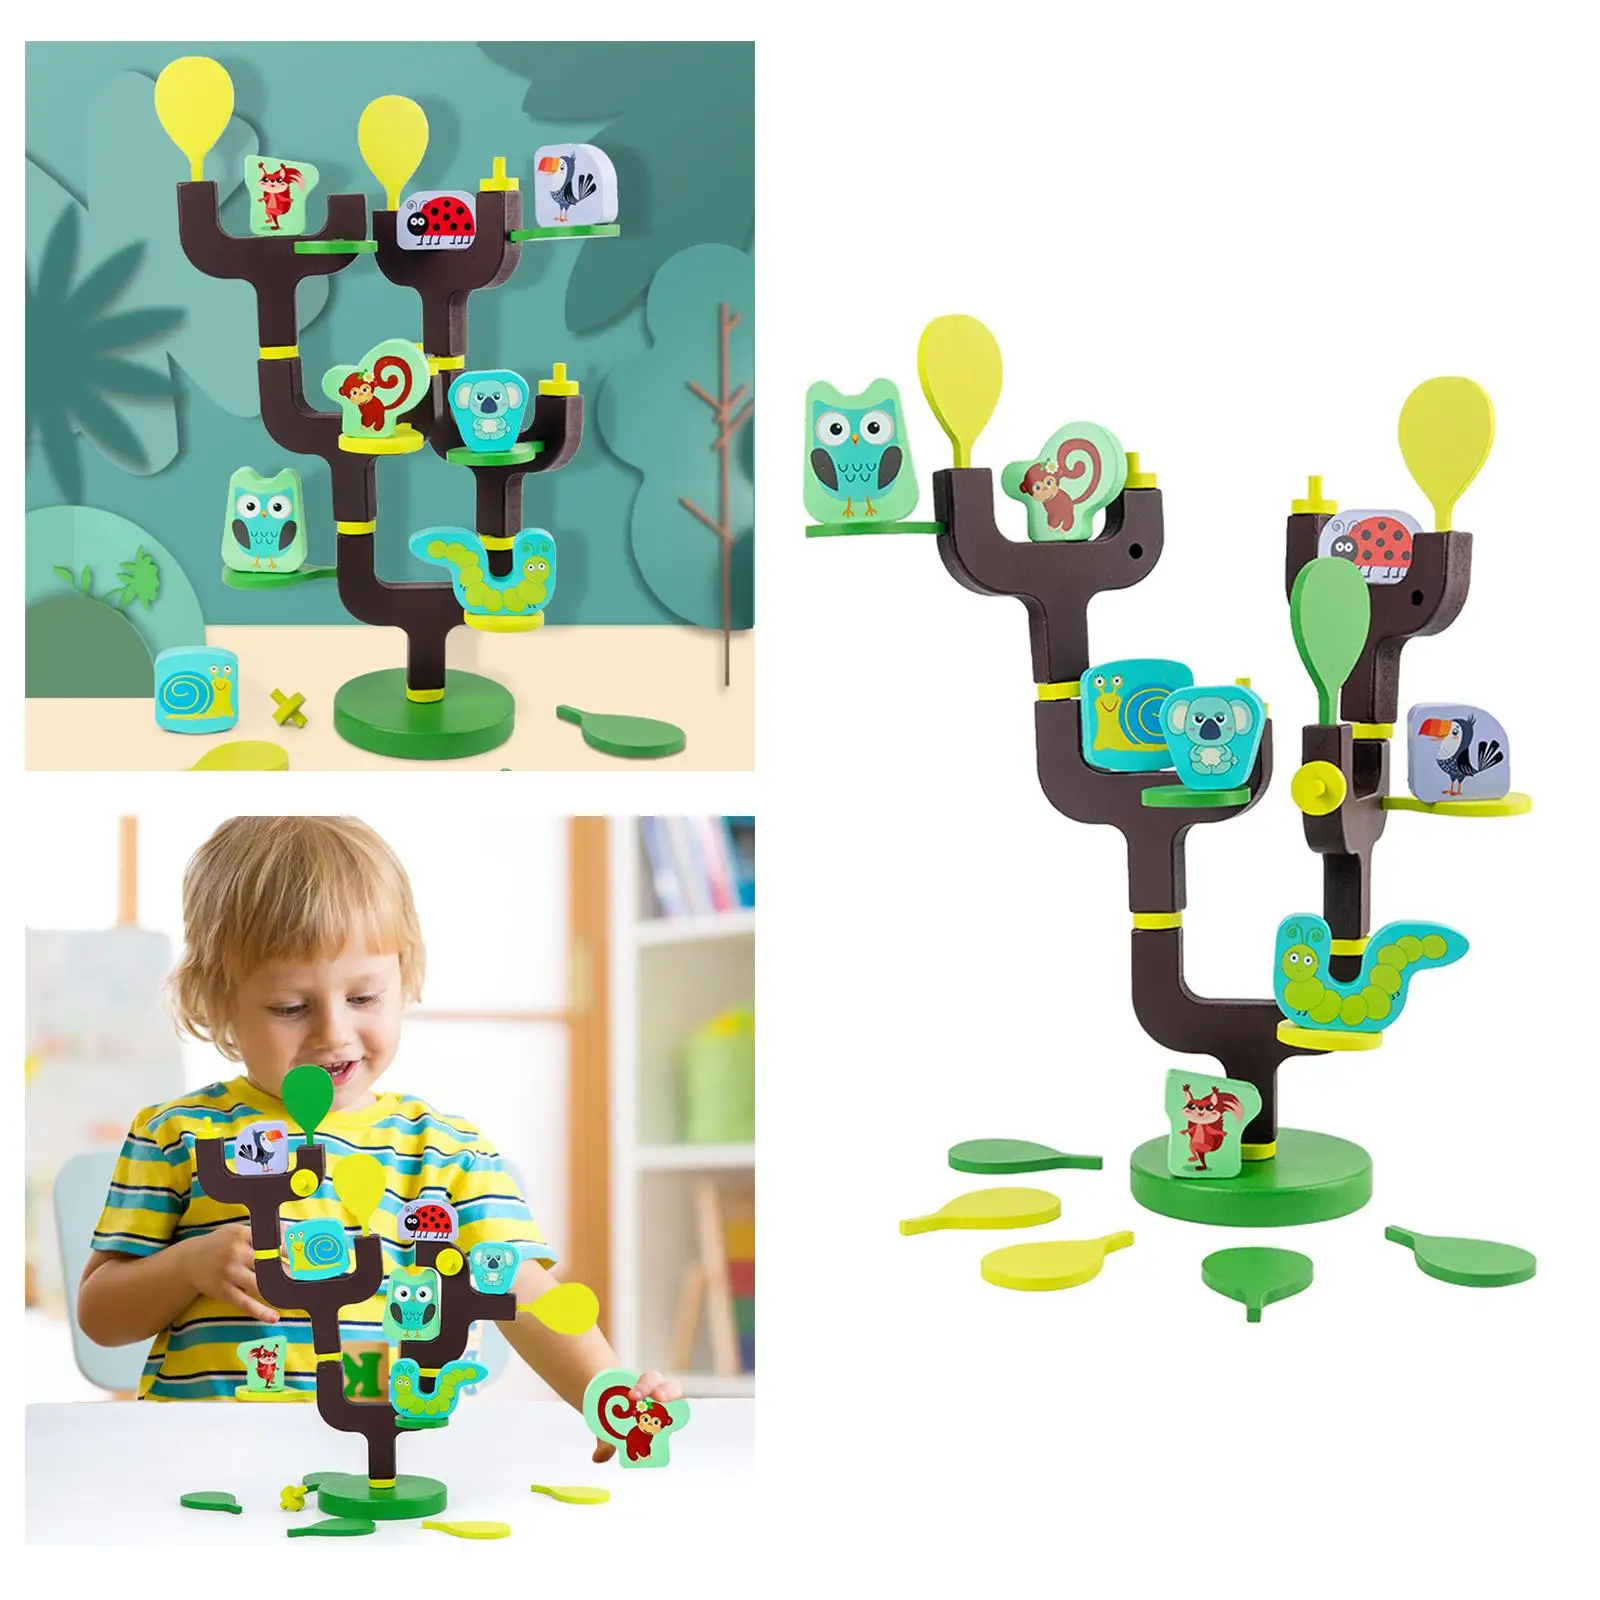 

Деревянные блоки для укладки баланса, открытая игра без ограничений, пазлы, игрушки для обоснования, развитие способностей, движущиеся руки